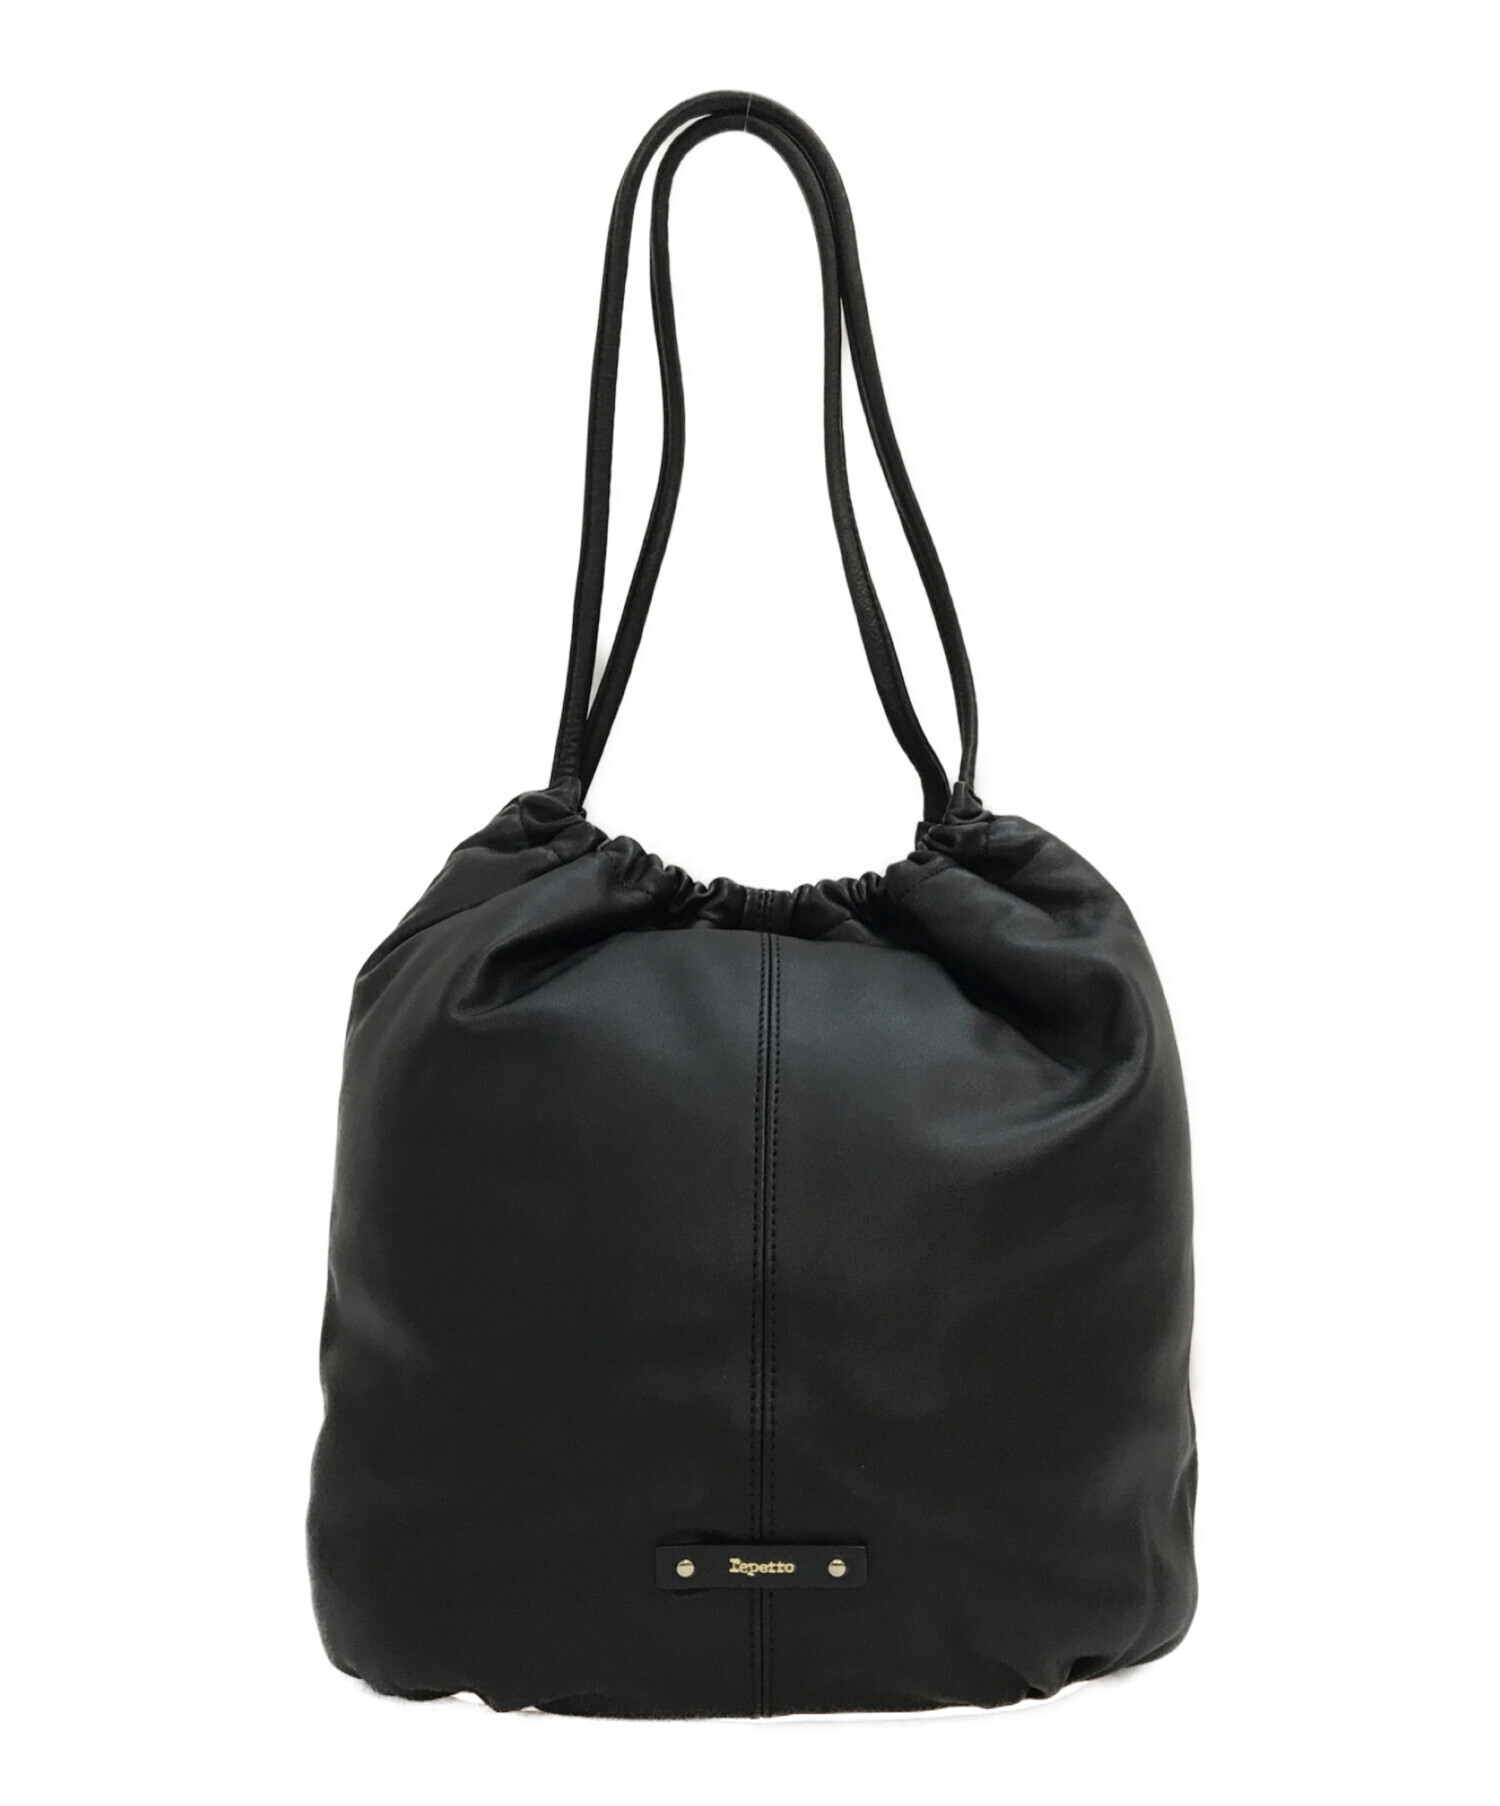 レペット／Repetto バッグ トートバッグ 鞄 ハンドバッグ レディース 女性 女性用レザー 革 本革 ブラック 黒  Tote Arabesque アラベスク 巾着型 2WAY ショルダーバッグ